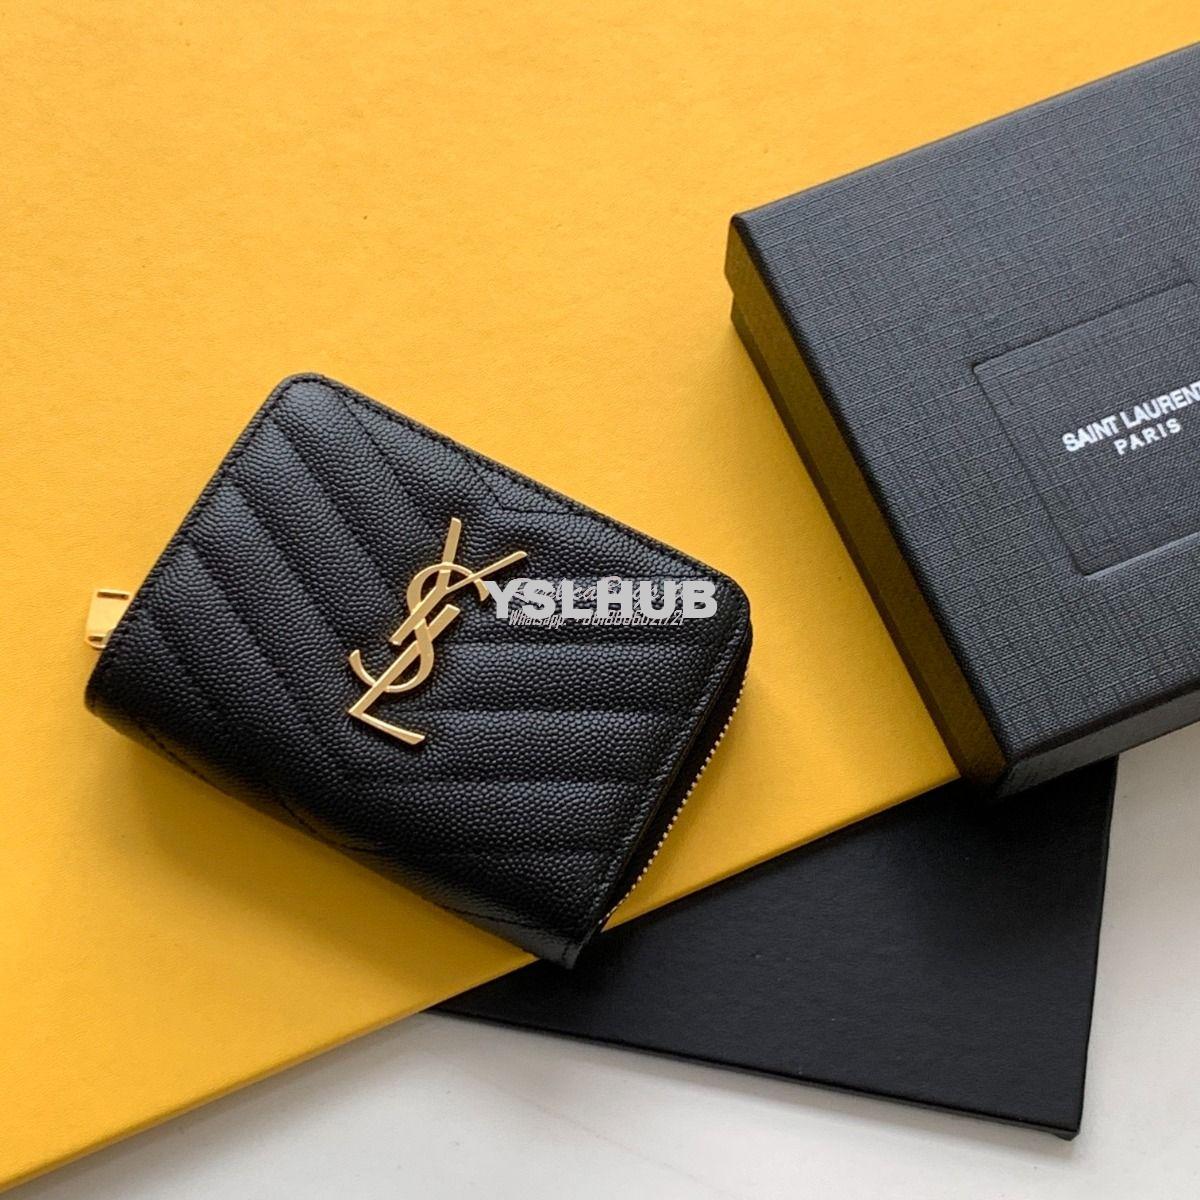 Replica YSL Saint Laurent Monogram compact zip around wallet in black